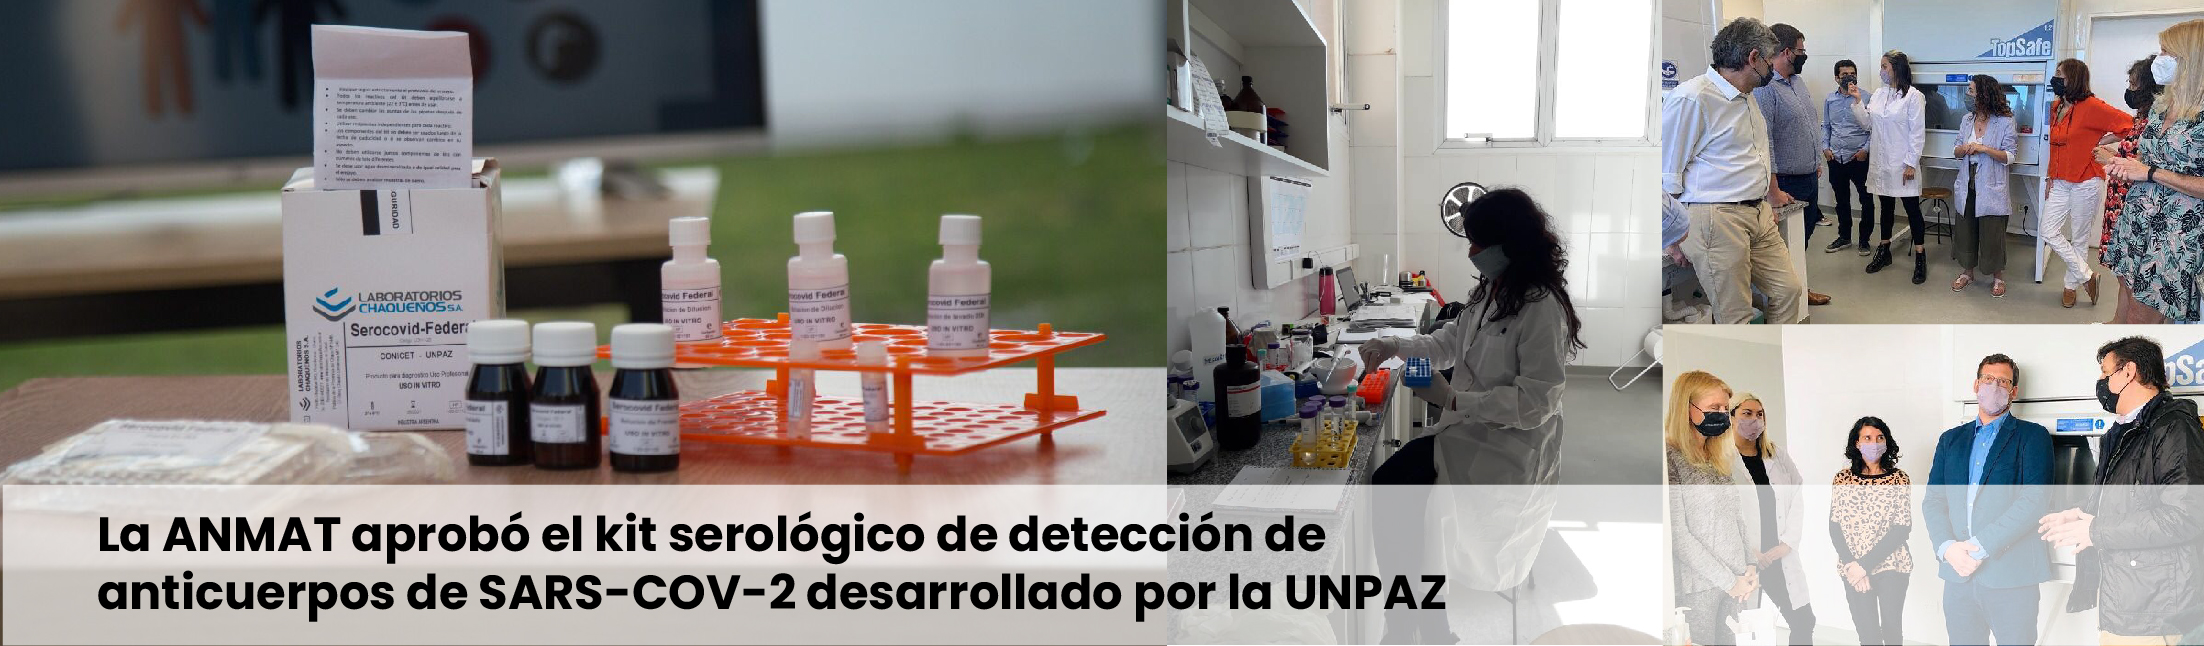 La ANMAT aprobó el kit serológico de detección de anticuerpos de SARS-COV-2 desarrollado por la UNPAZ